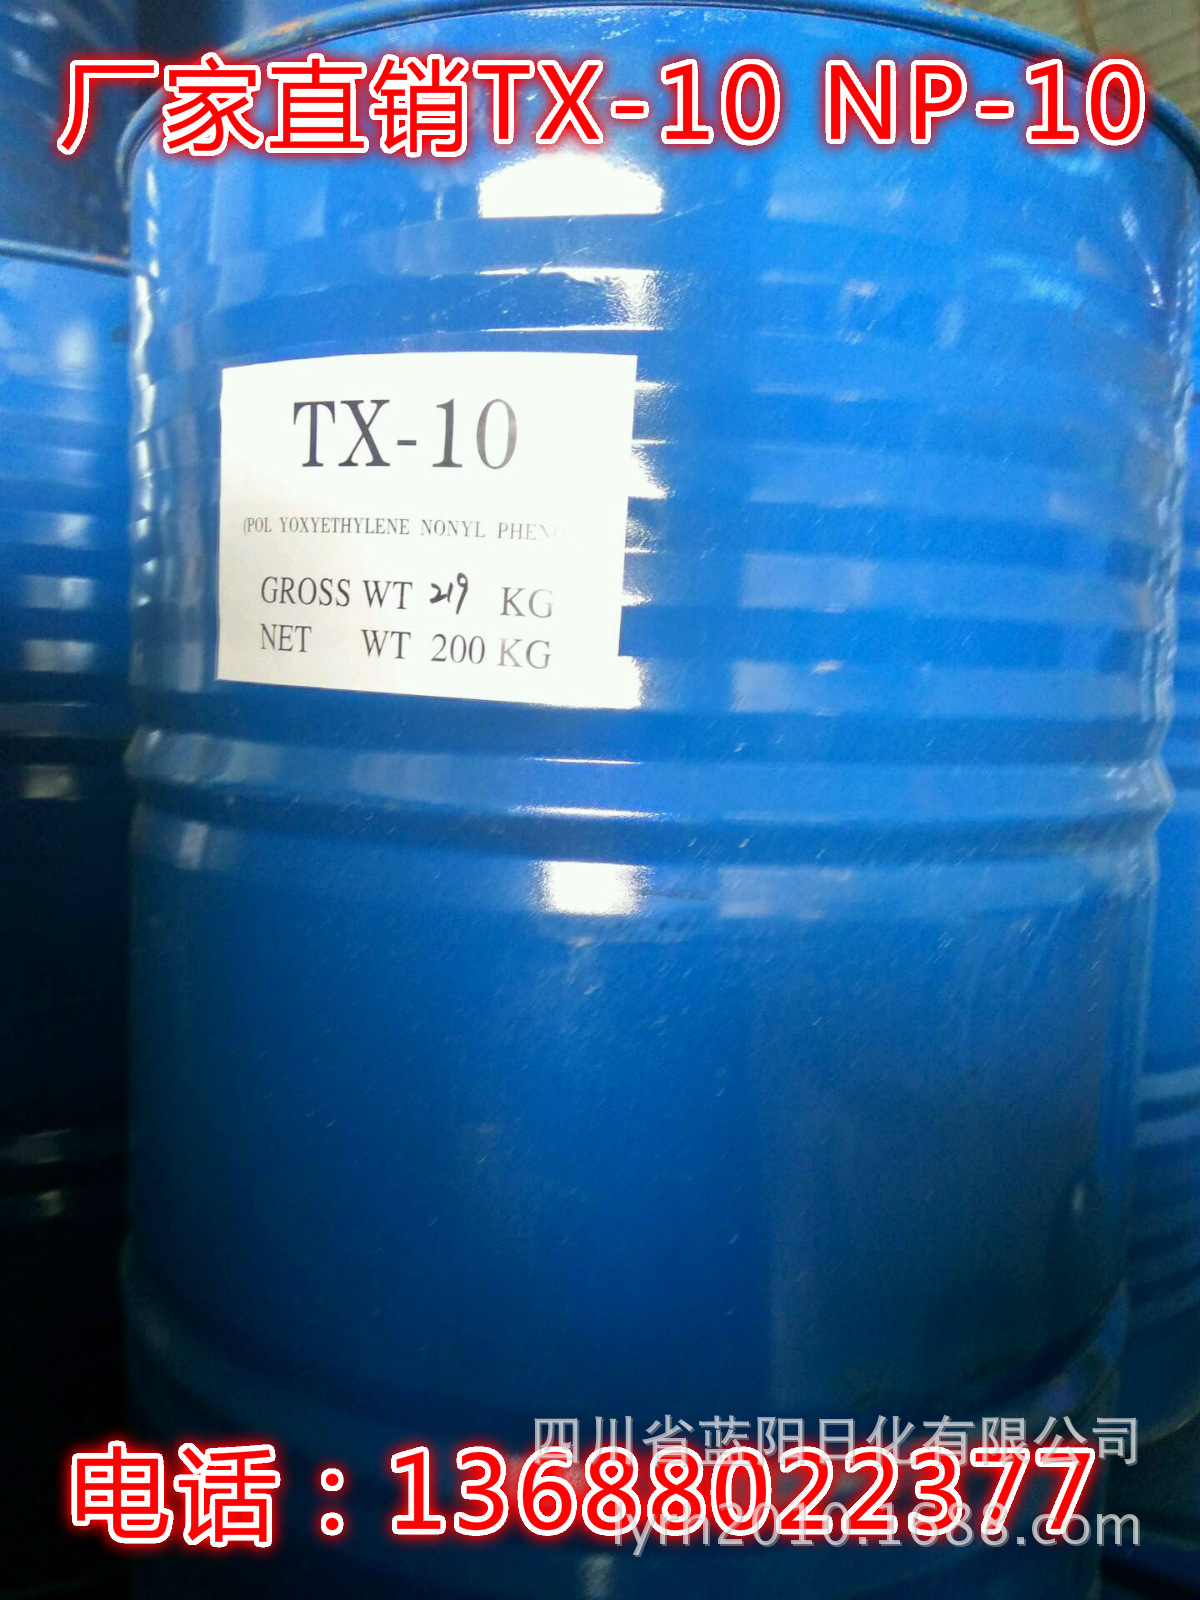 厂家现货供应TX-10乳化剂 强乳化剂NP-10 TX-10 四川成都销售